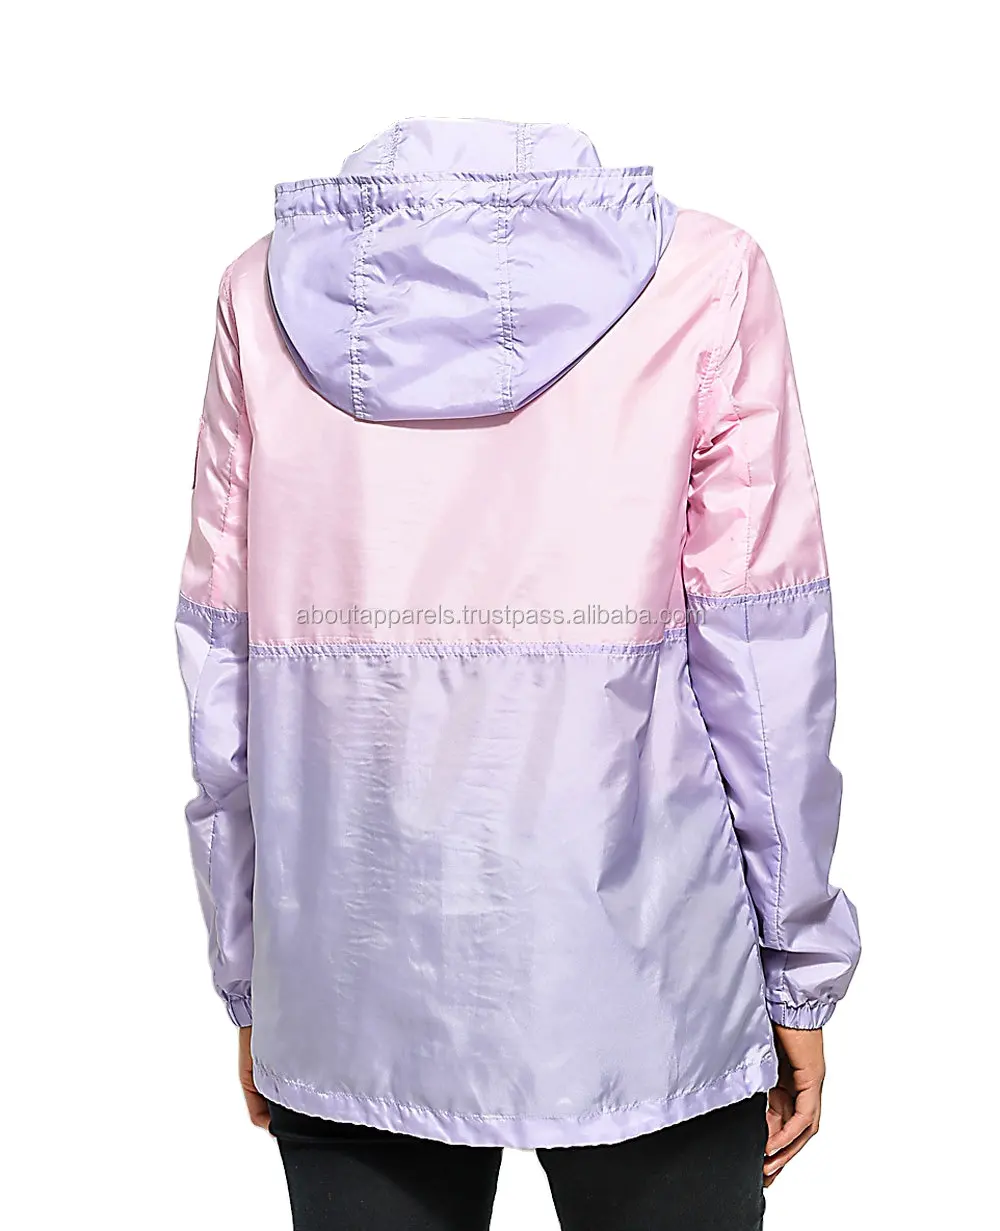 Hochwertiger Farb block Letter Print Frauen Outdoor Zip Up Leichter Nylon Anorak Wind breakers Jacken Mantel